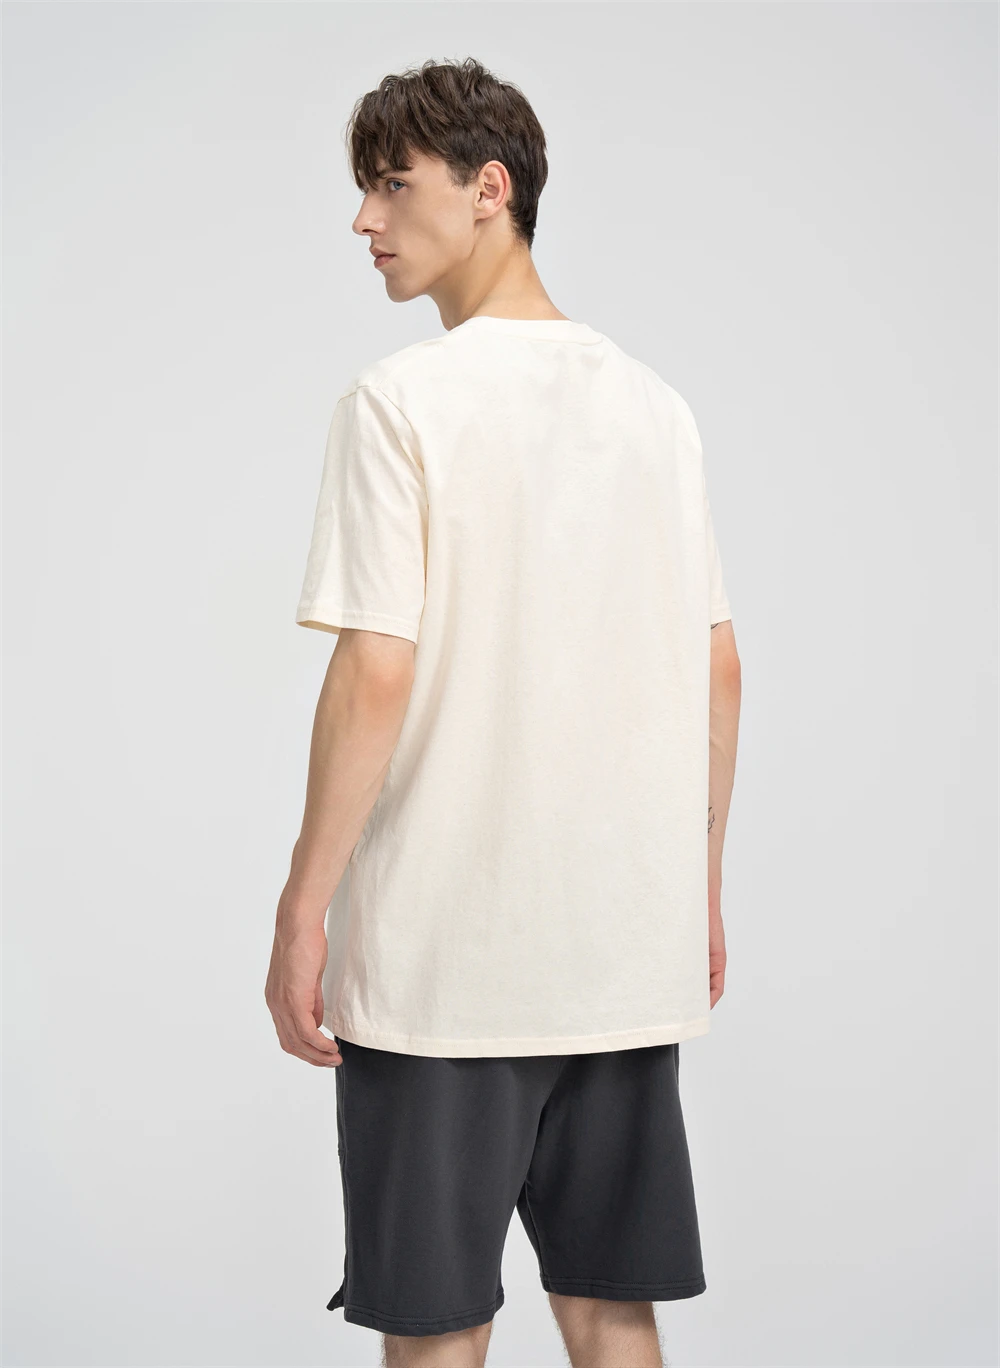 Wholesale High Quality 180gsm 100% Cotton Men's Plain T-shirts Tee ...